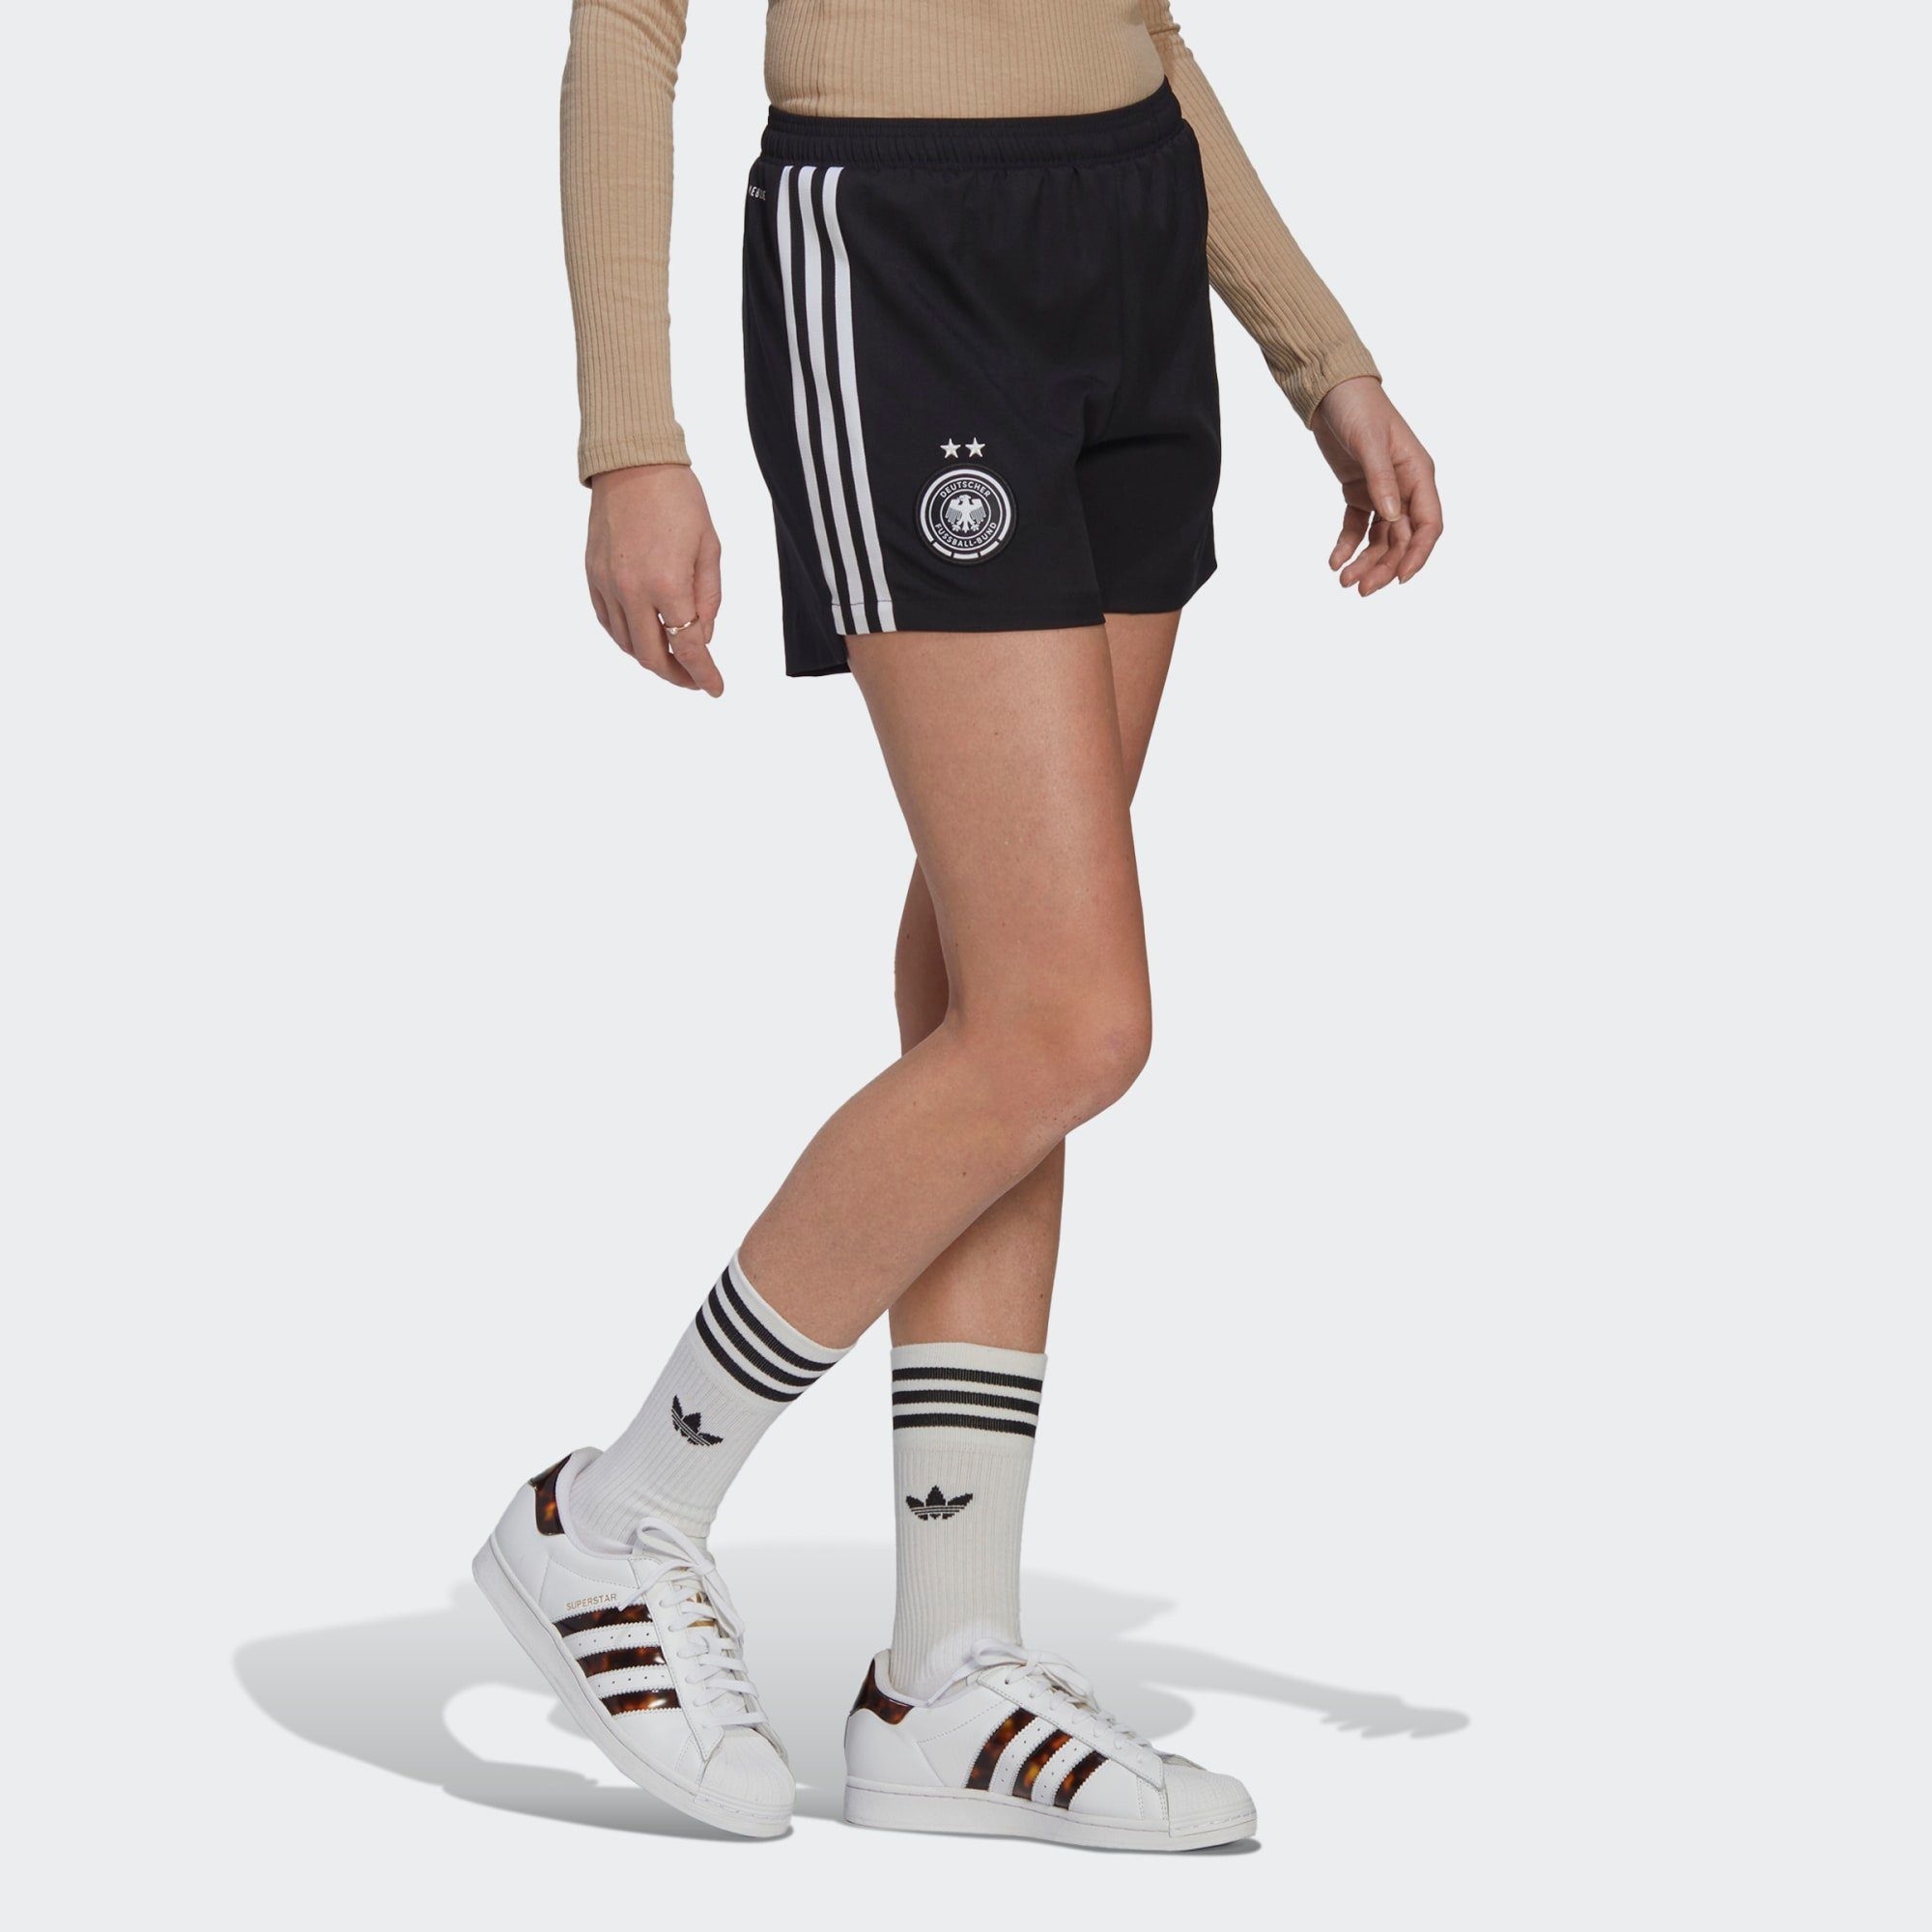 Deutschland Shorts online kaufen » DFB Shorts | OTTO